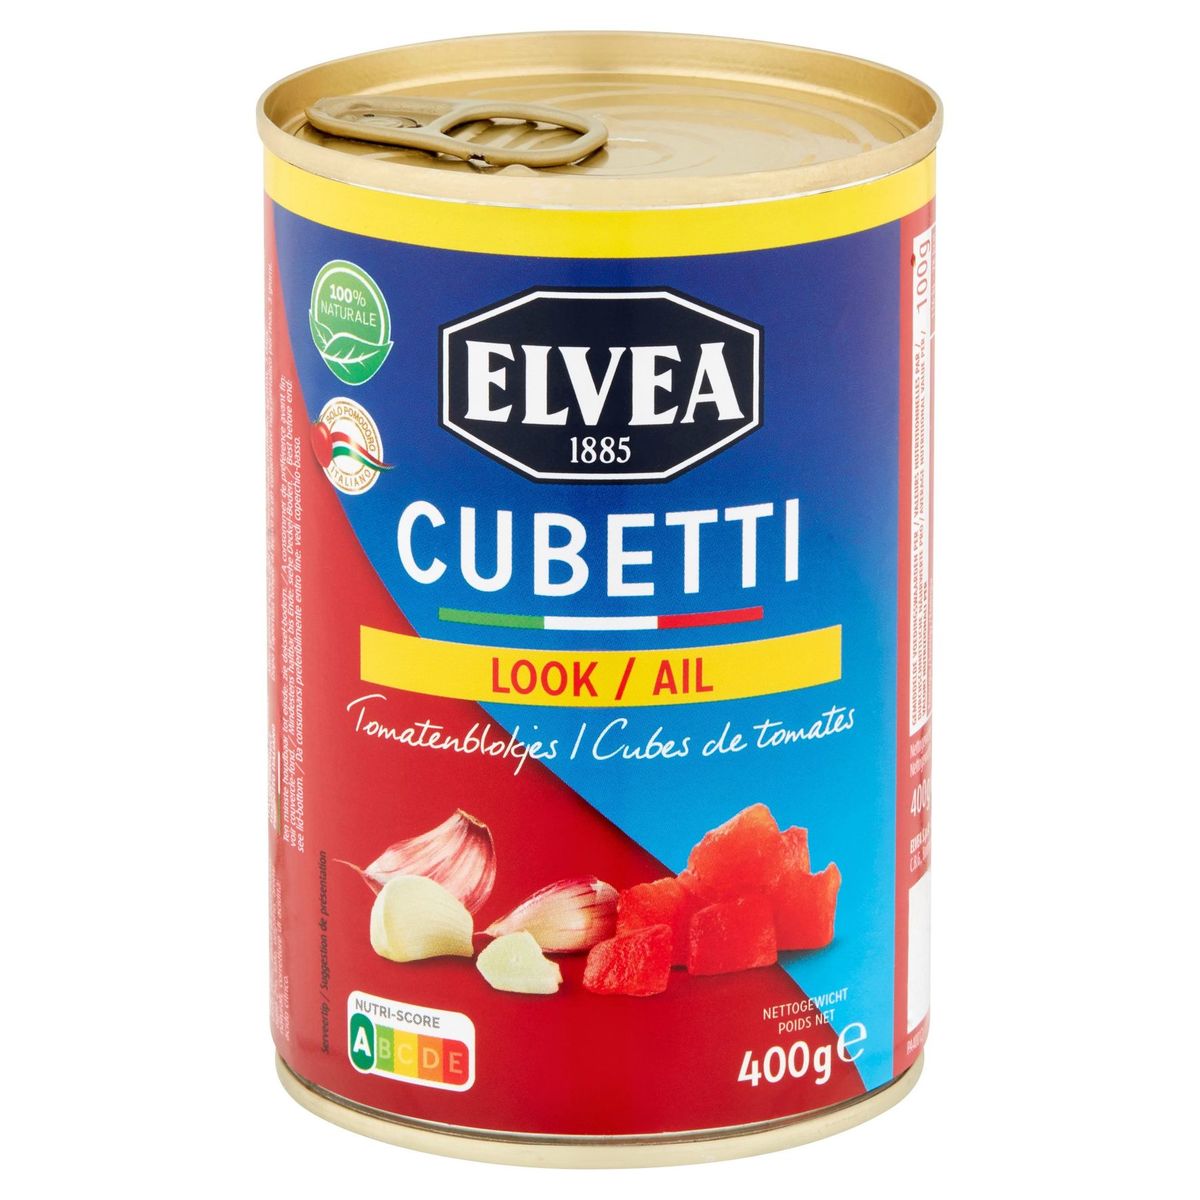 Elvea Cubetti Ail Cubes de Tomates 400 g